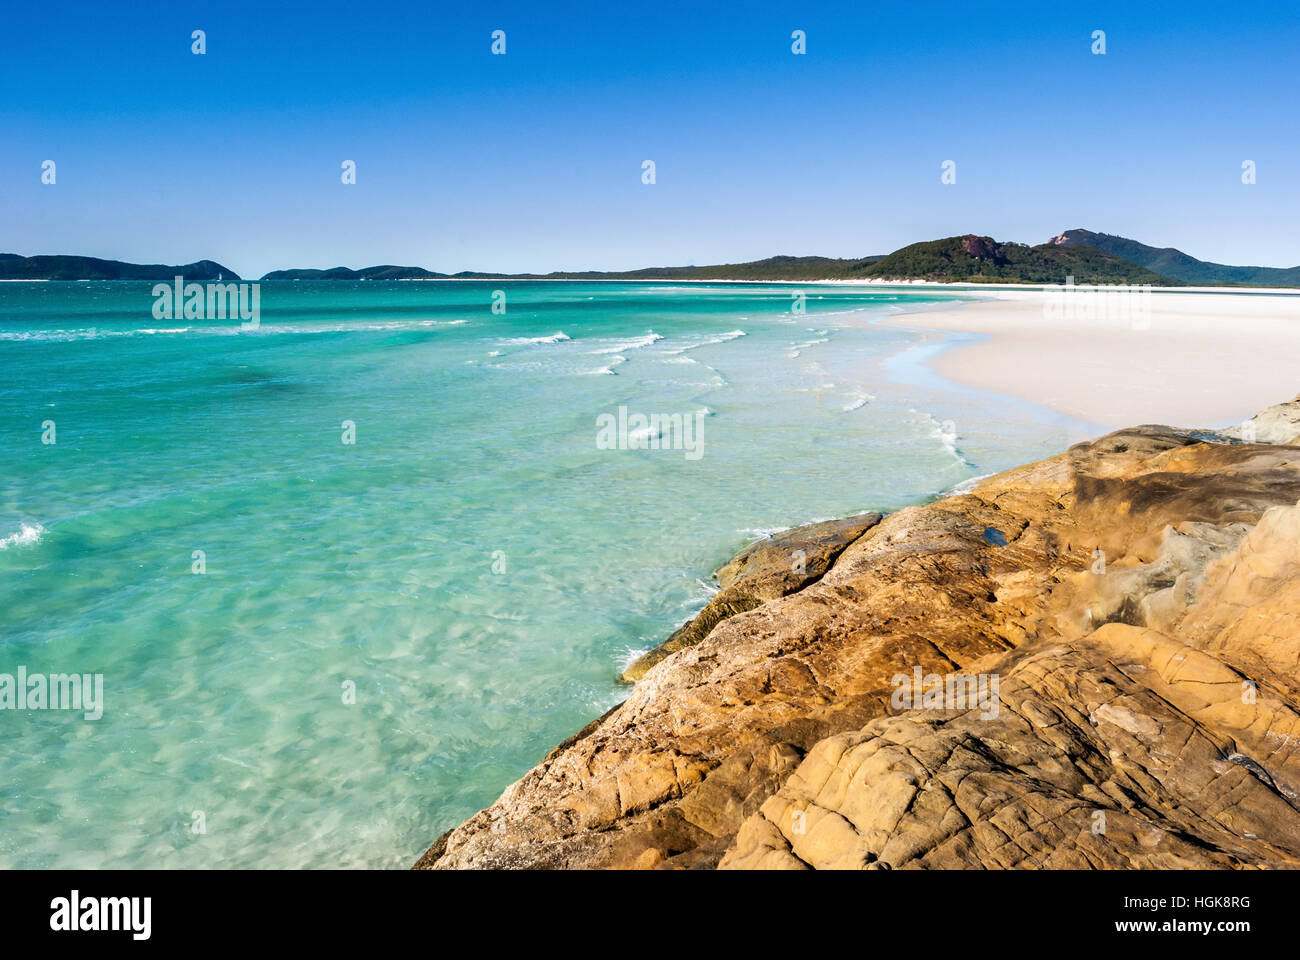 Paradise beach (Whitsunday Islands, Australia) Stock Photo